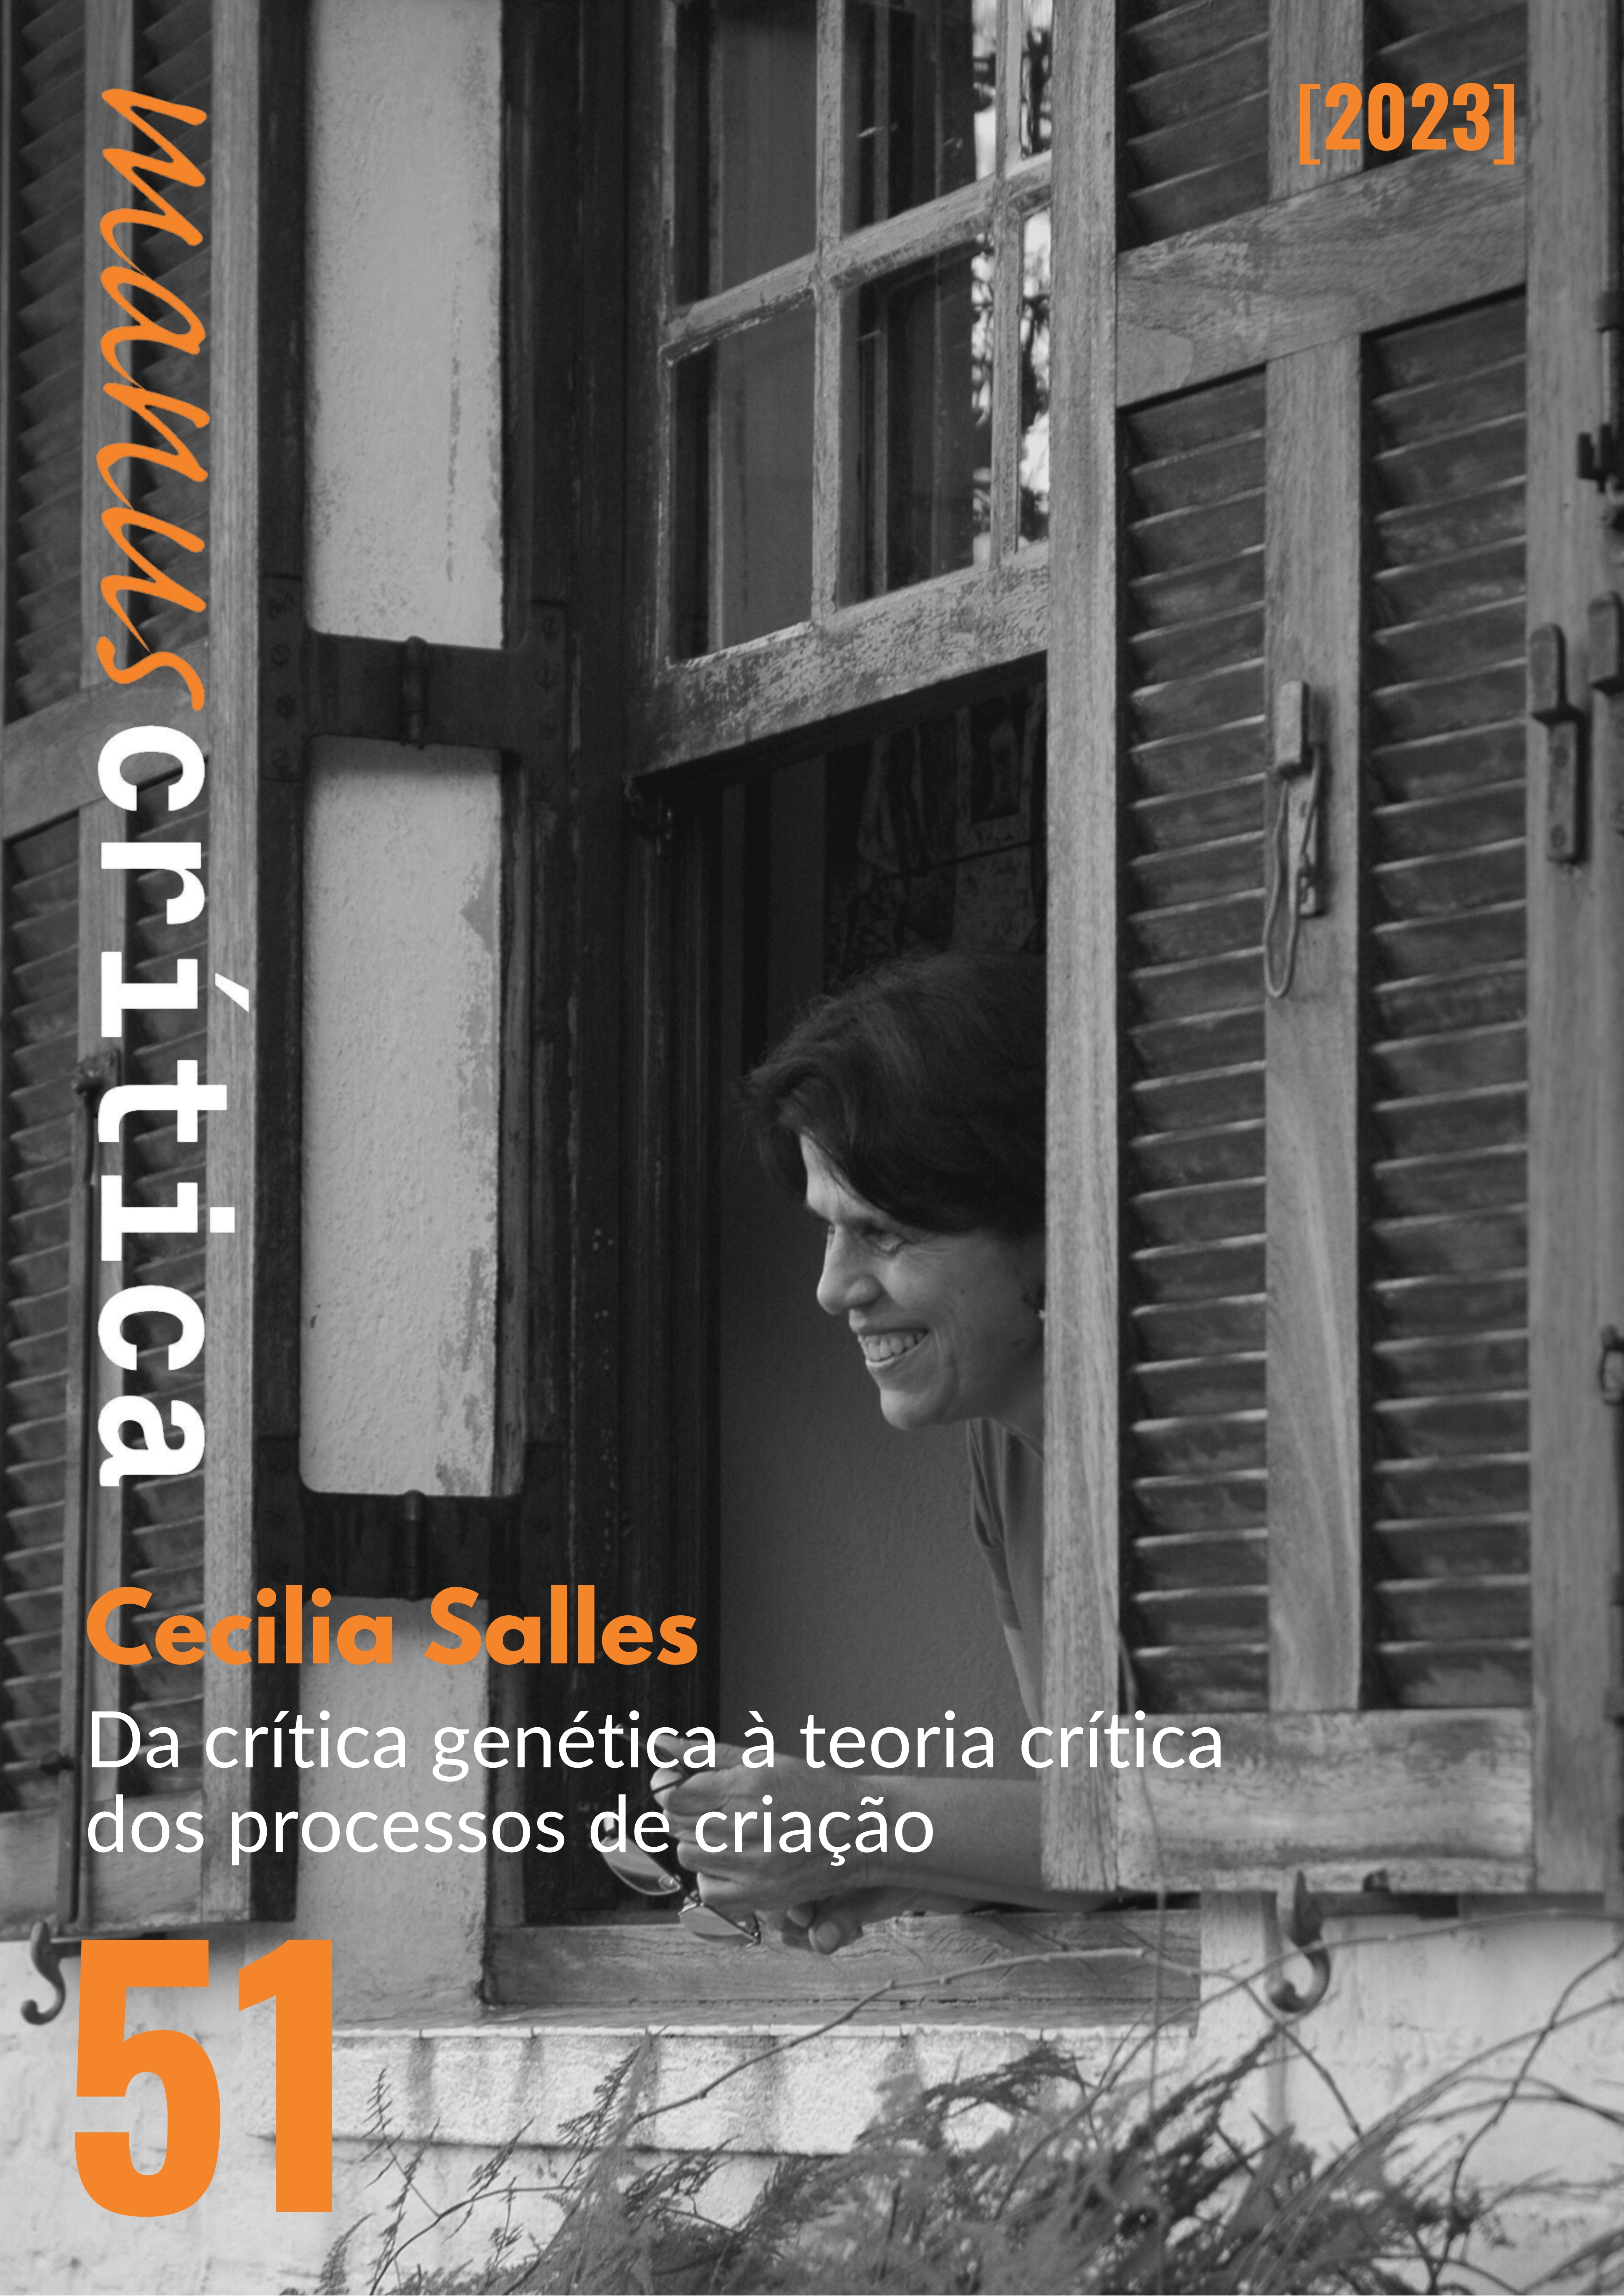 					View No. 51 (2023): Cecilia Salles: da crítica genética à teoria crítica dos processos de criação
				